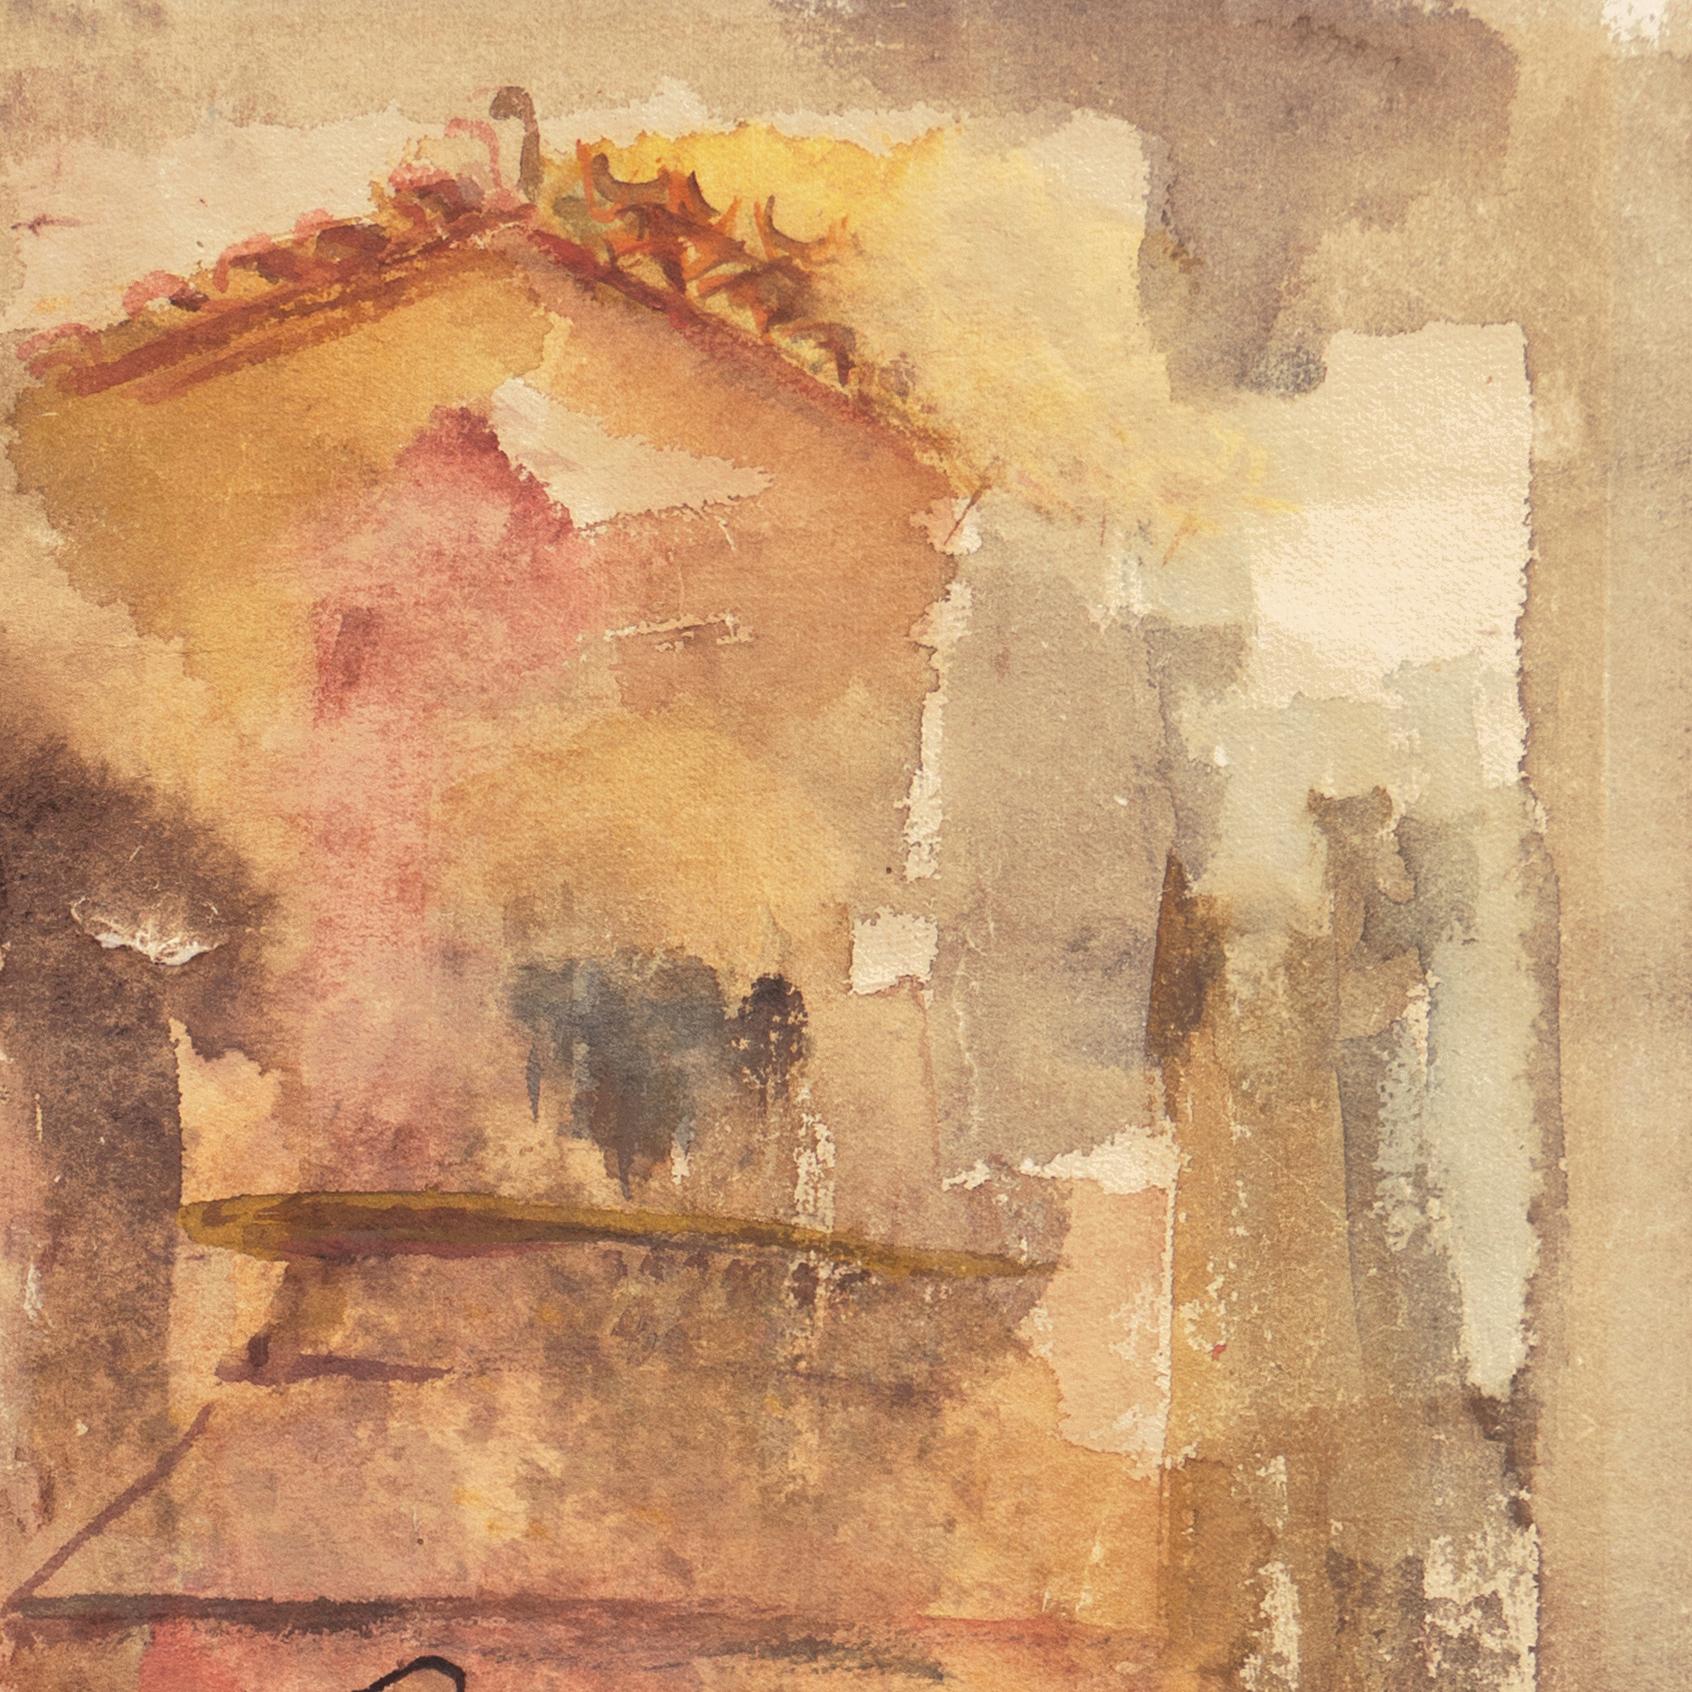 Eine halb abstrahierte Studie einer toskanischen Stadtlandschaft mit warmen Terrakotta-Dächern und Stucktönen in Safran und Karminrot. 

Signiert unten rechts: 